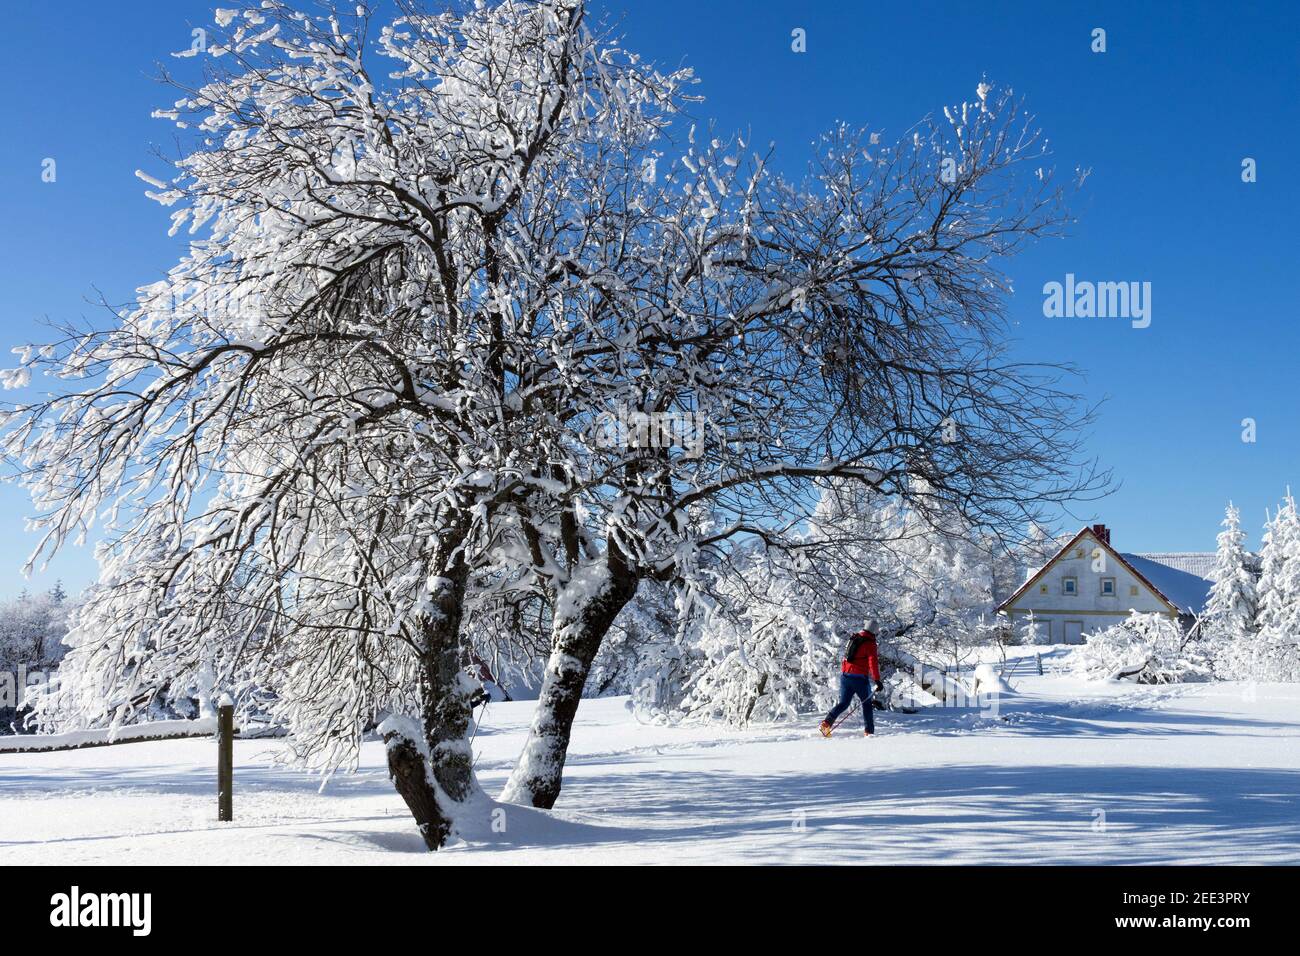 République tchèque paysage rural pittoresque, un homme skieur dans la piste de neige Banque D'Images